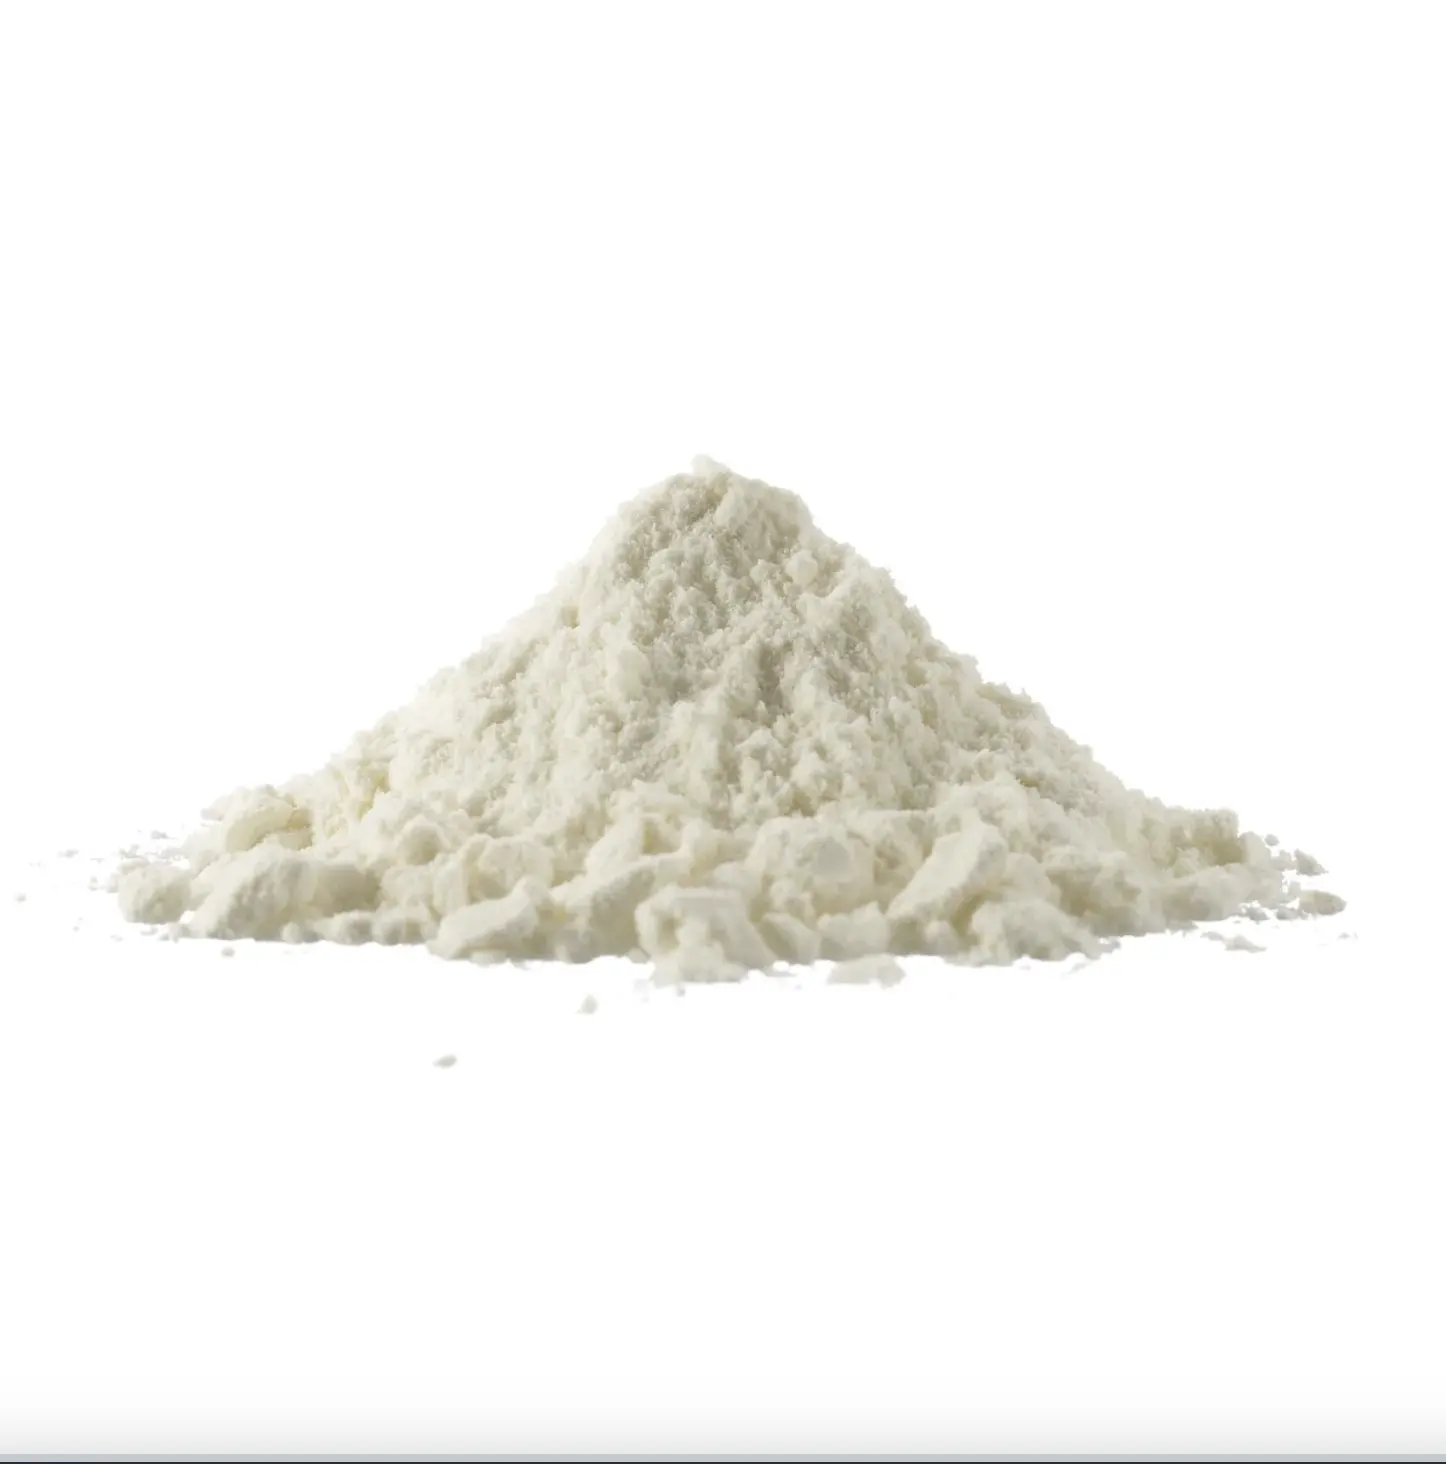 Bestpreis für abgeschlackte Milch / Vollcreme-Milchpulver / Süßes Molkenpulver 25 kg und 50 kg Beutel zu erschwinglichen Preisen verfügbar